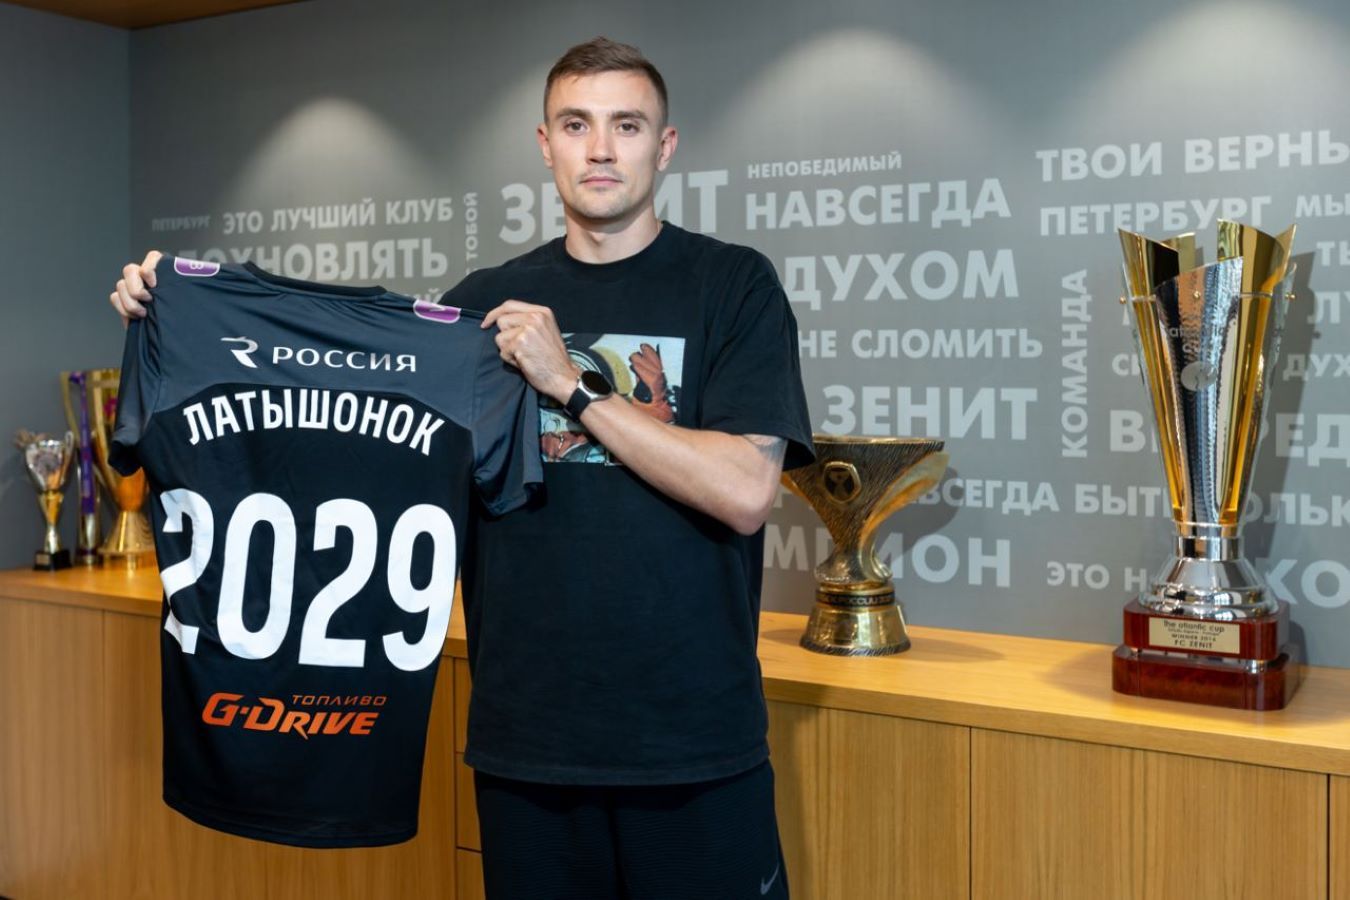 Евгений Латышонок прокомментировал свой трансфер в «Зенит»